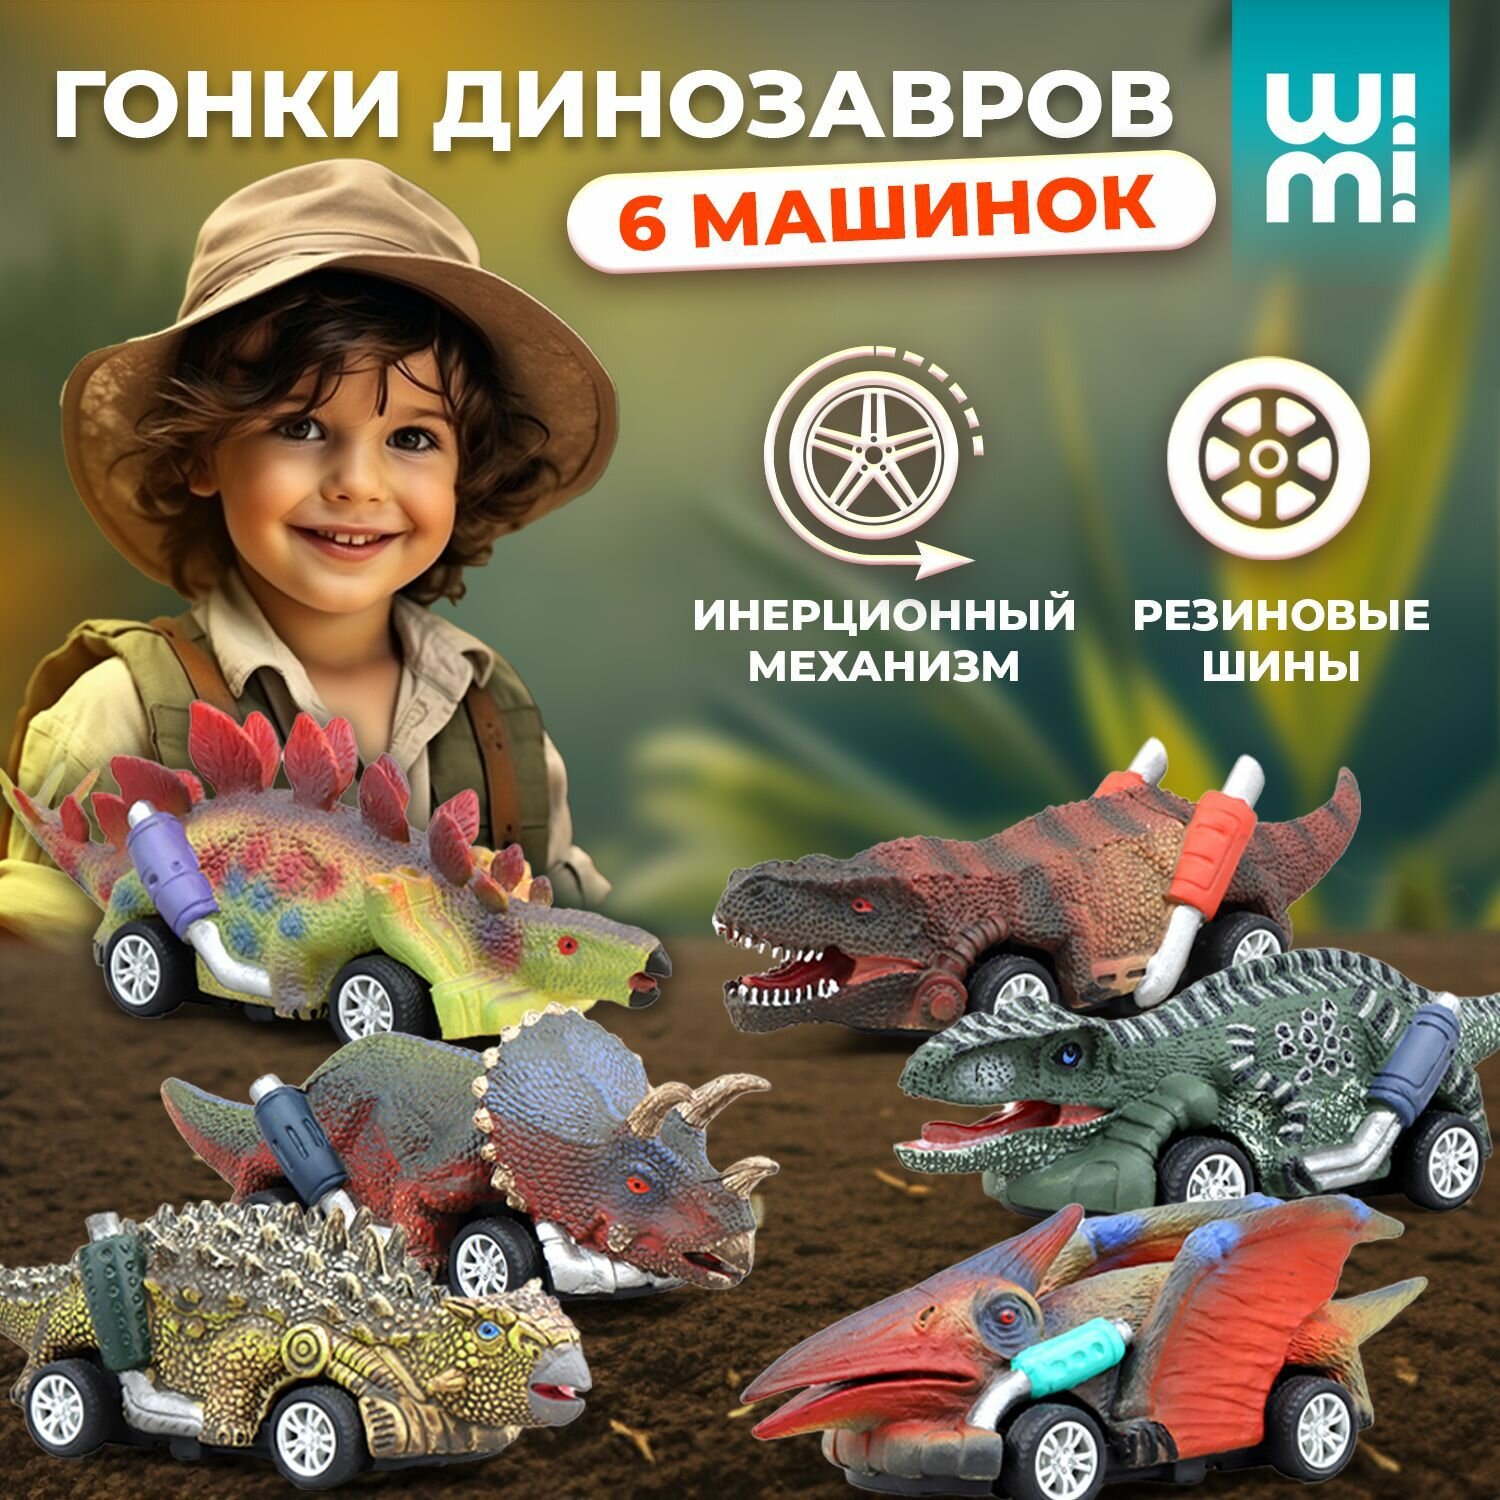 Набор машинок динозавры WiMi, монстр трак машинка и динозавры игрушки